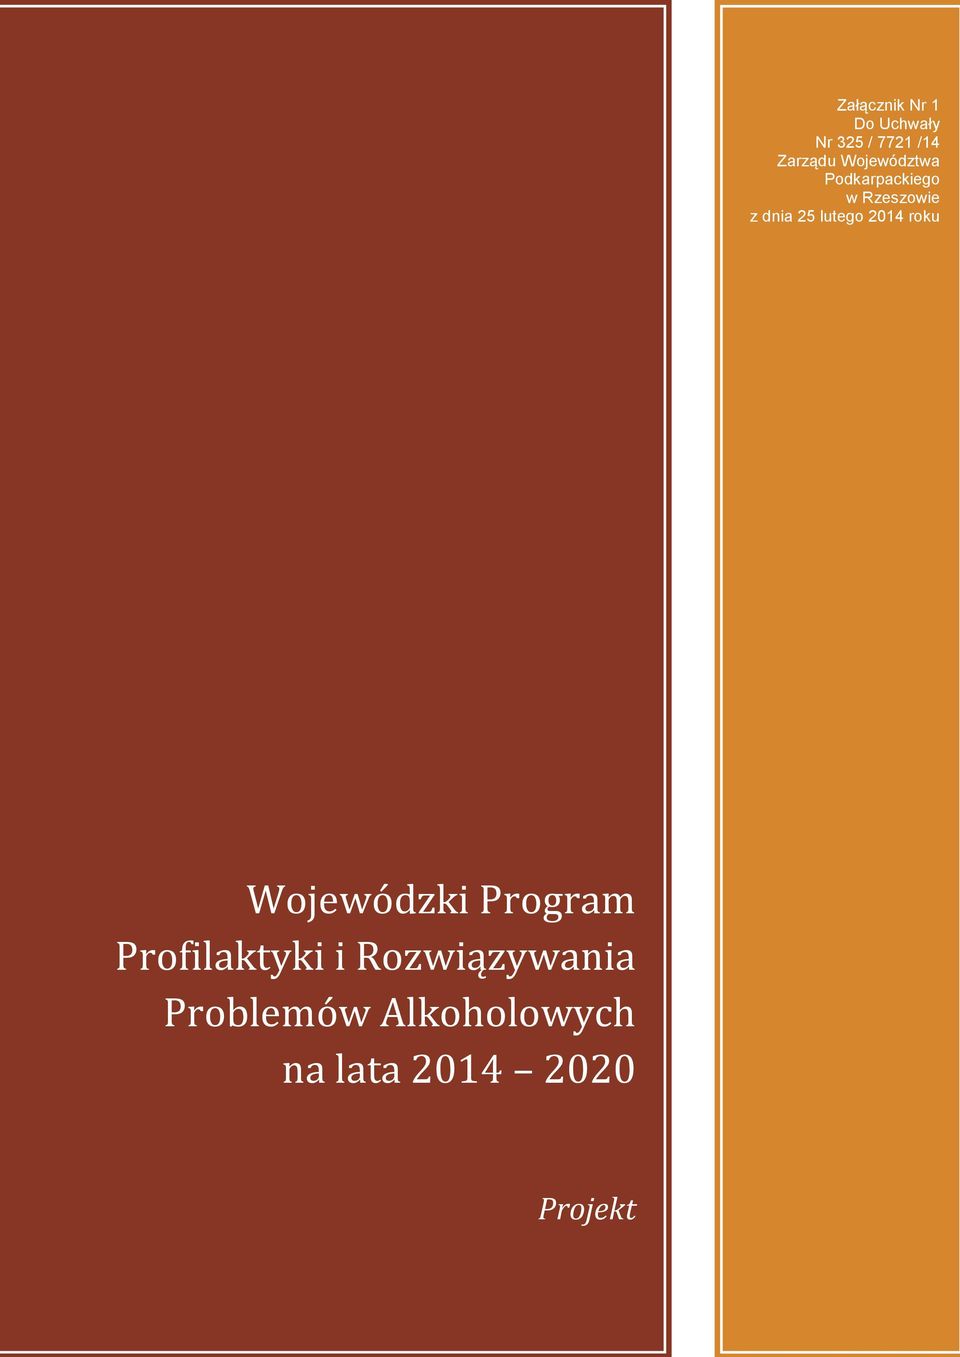 lutego 2014 roku Wojewódzki Program Profilaktyki i